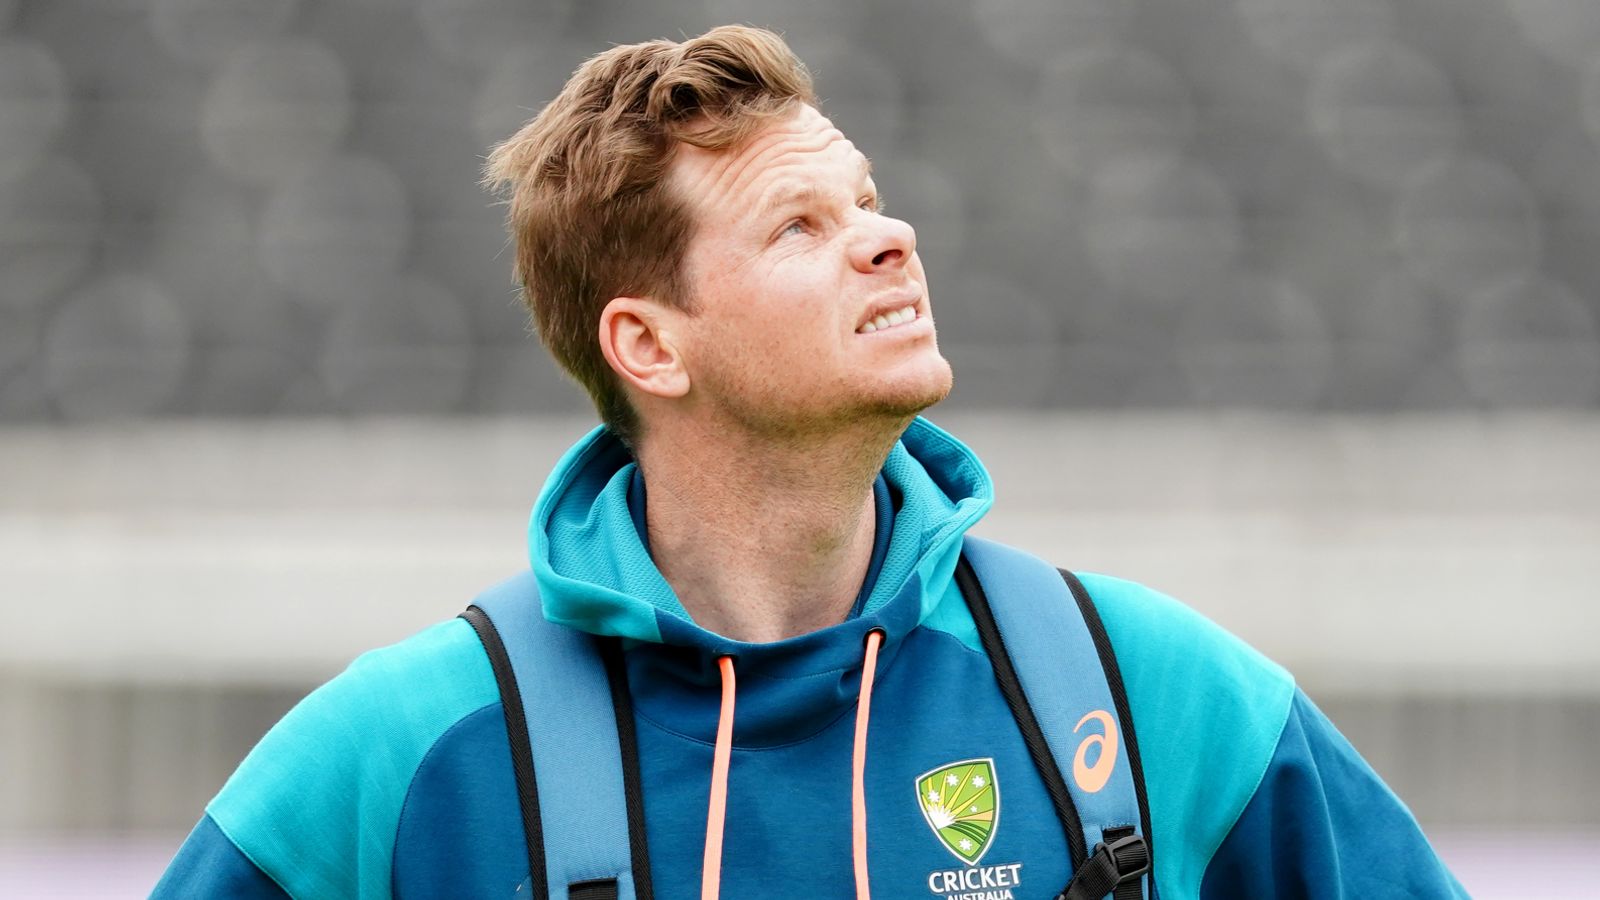 Steve Smith reemplaza a David Warner como abridor de la prueba de Australia para la serie de las Indias Occidentales y confirmado como capitán de ODI |  Noticias de críquet